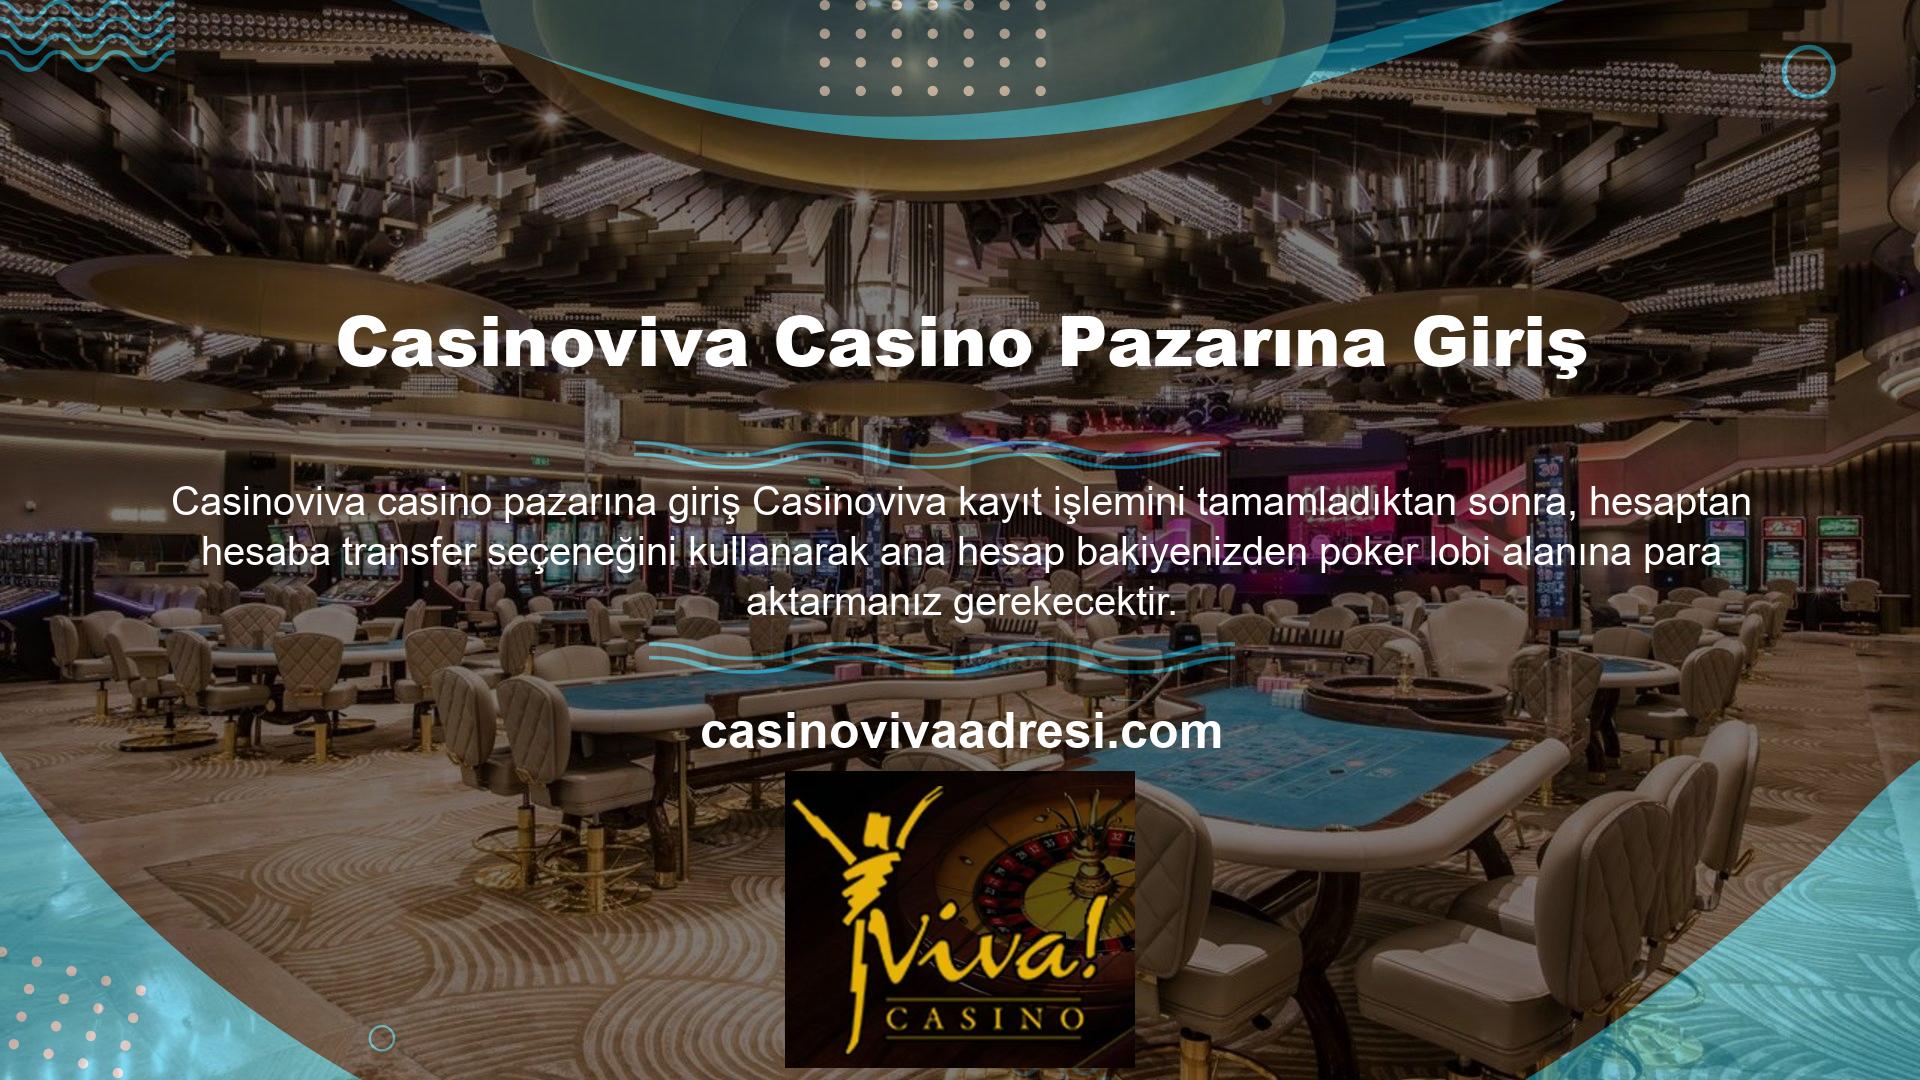 Bahis meraklısı web sitesi Casinoviva, bu bahis konseptlerini sanal bahis şeklinde ayrı bir bölüm olarak ekledi